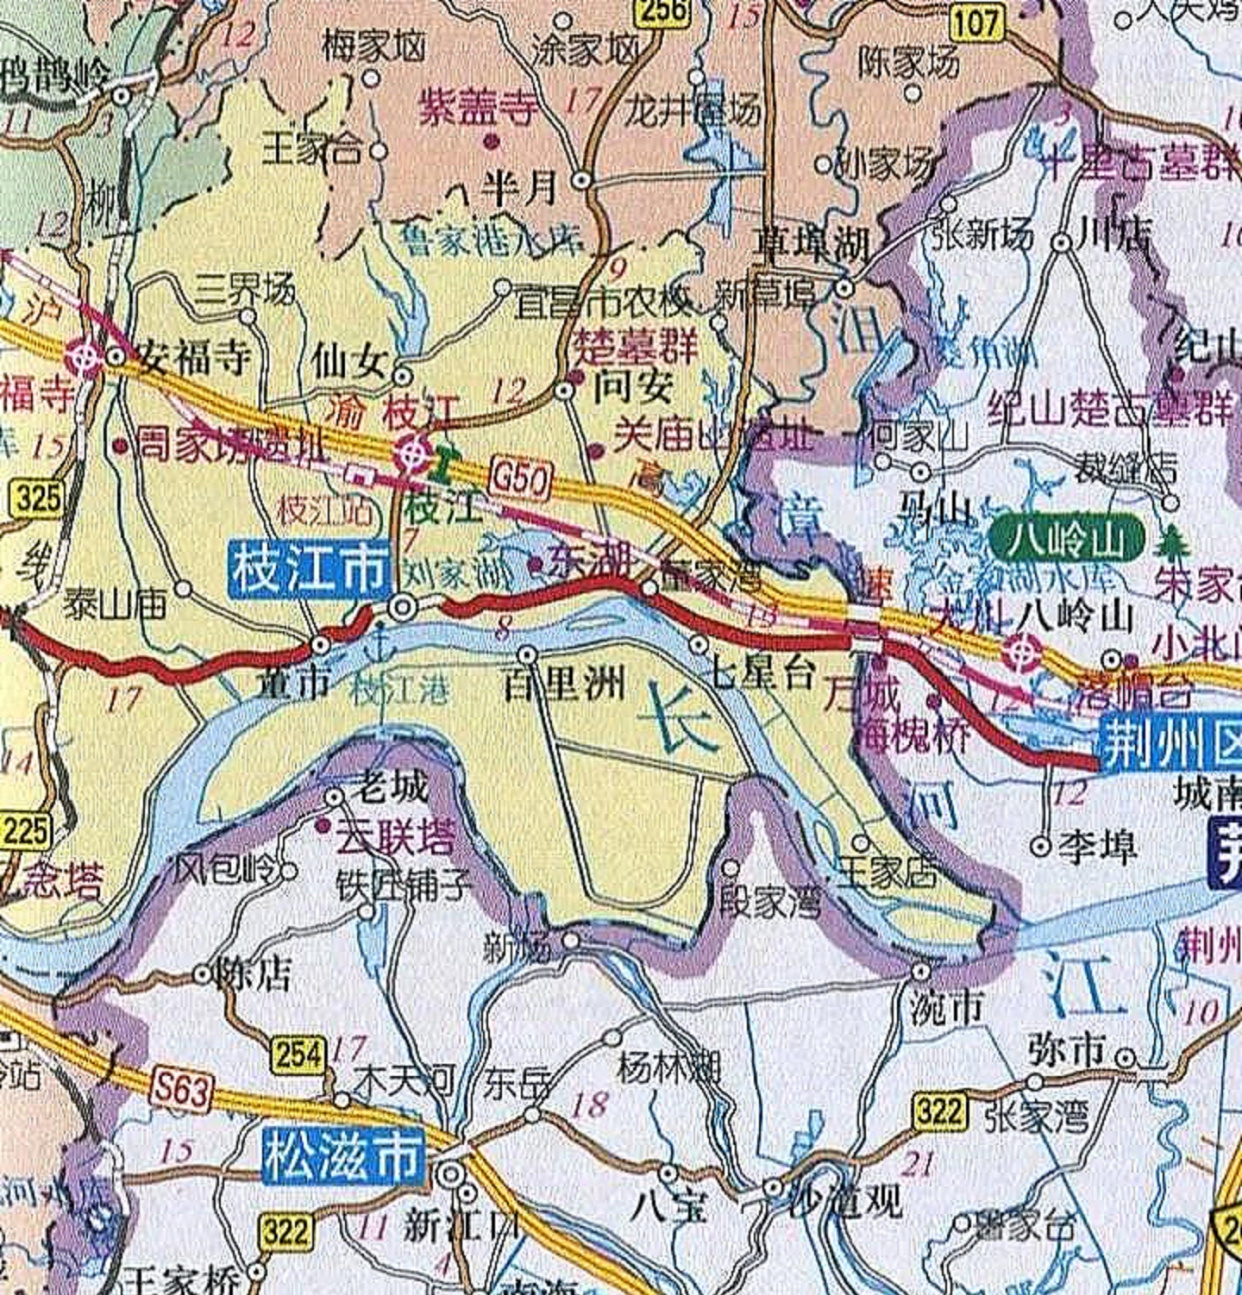 枝江市问安镇地图图片